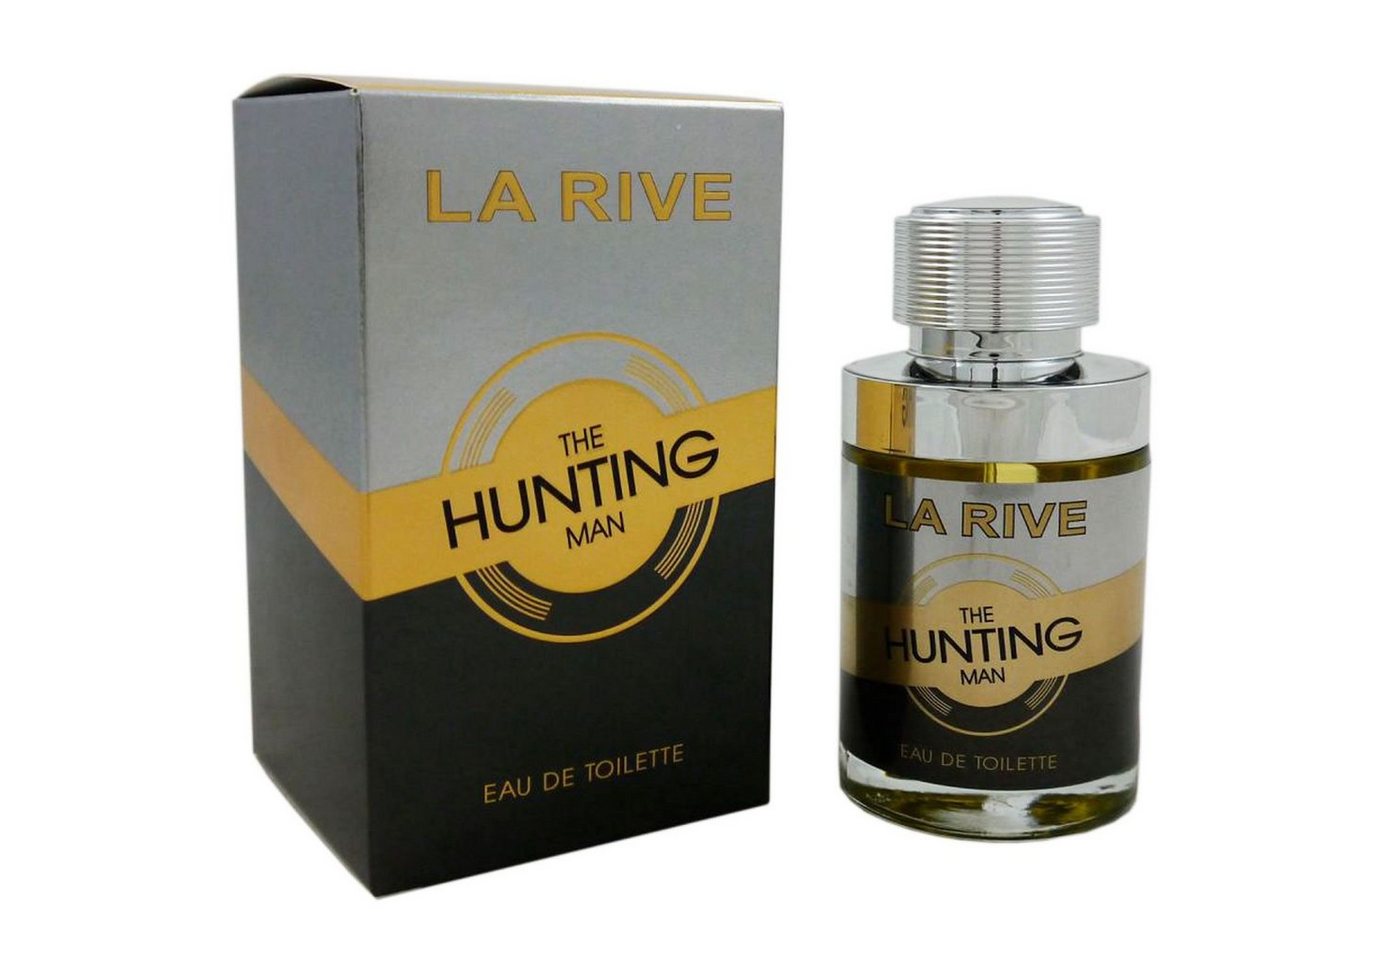 La Rive Eau de Toilette The Hunting Man 75 ml von La Rive